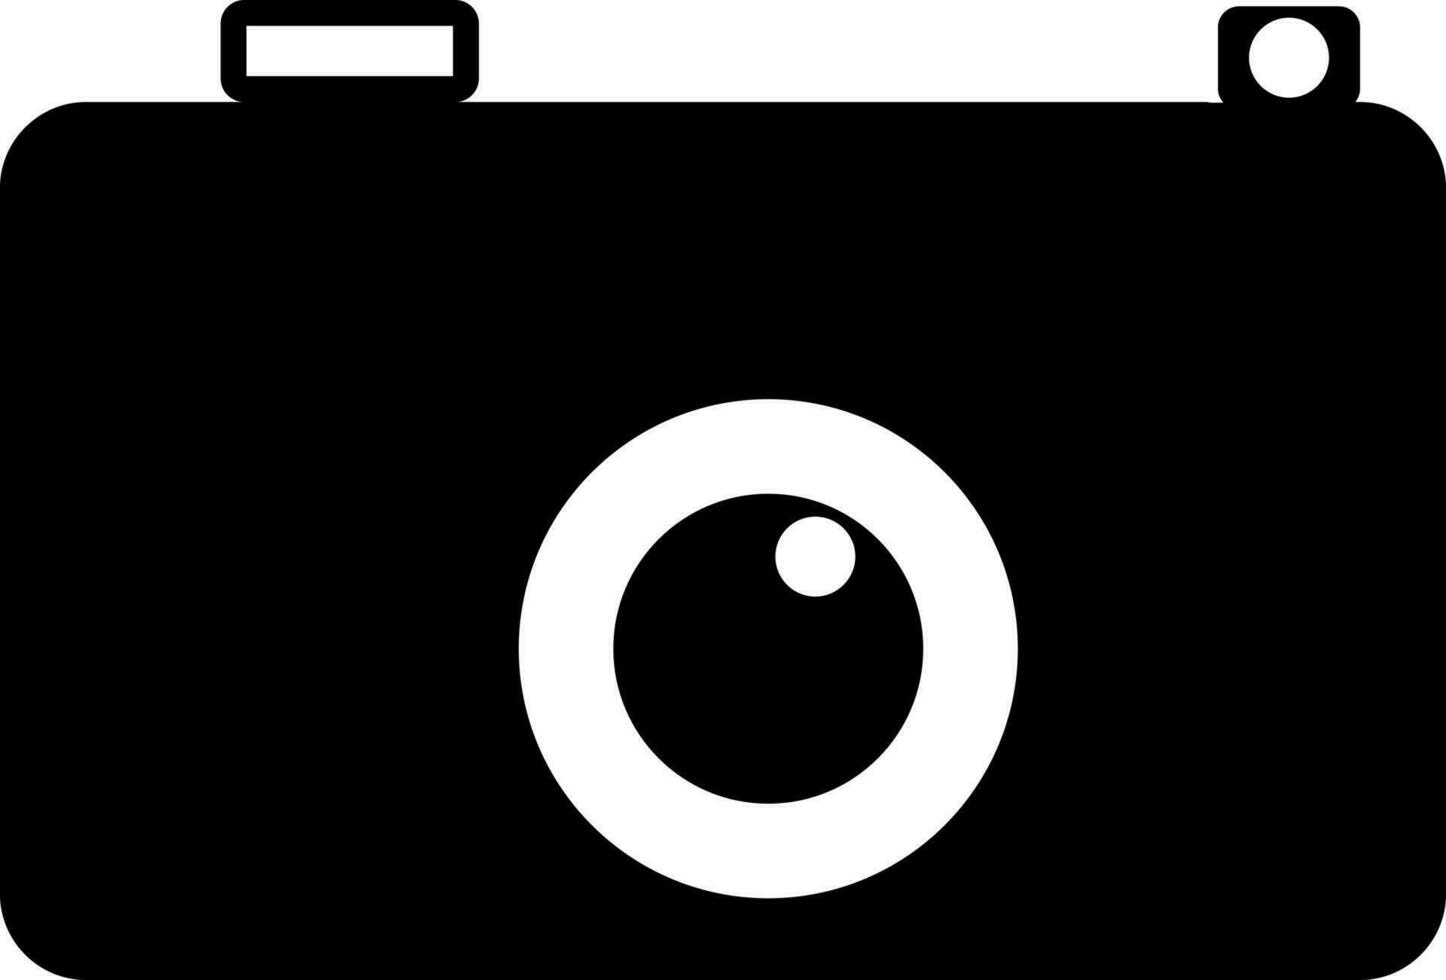 Preto e branco ilustração do uma Câmera. vetor